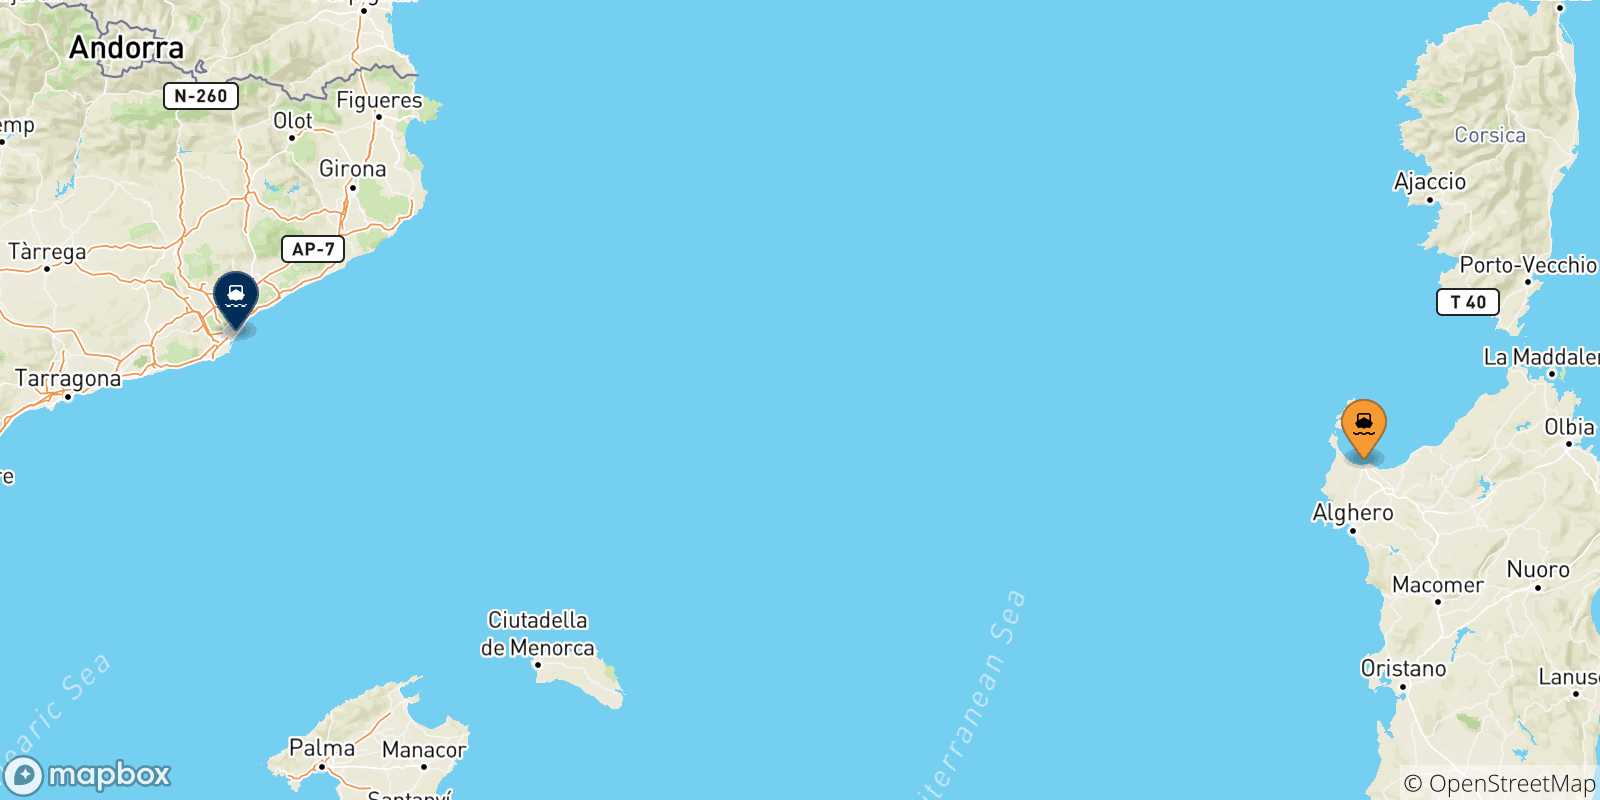 Mappa delle possibili rotte tra Porto Torres e la Spagna